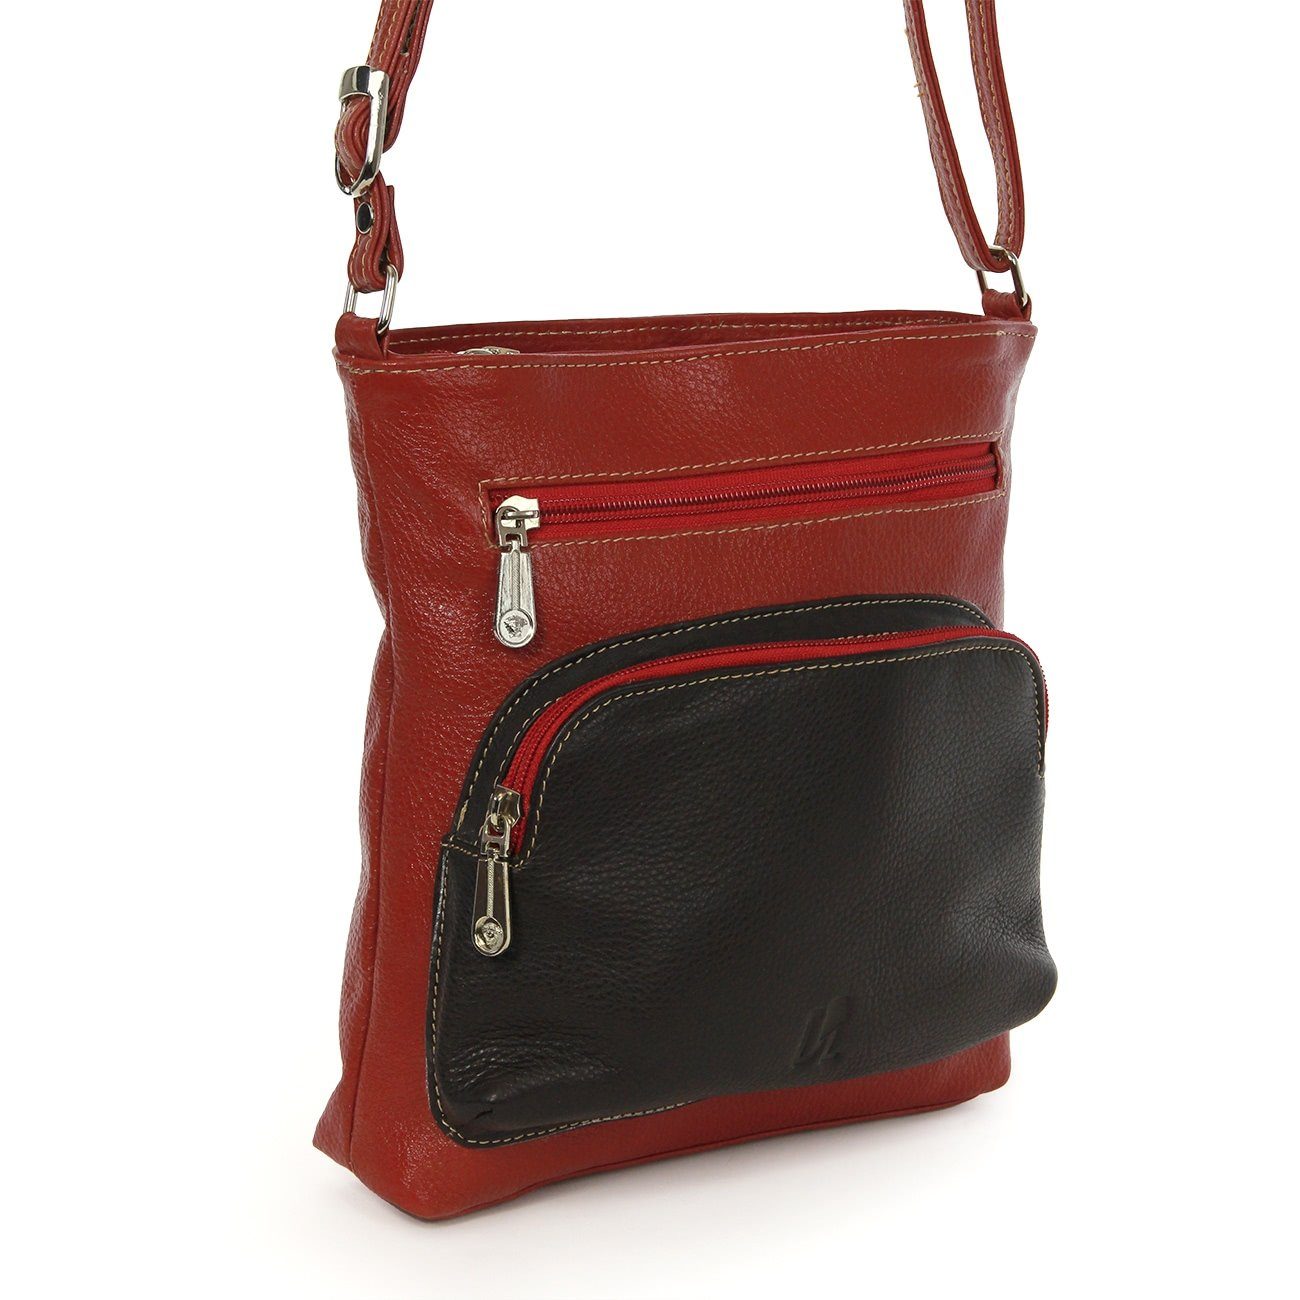 DrachenLeder braun Echtleder DrachenLeder (Handtasche), Handtasche OTZ900X Damen Damen schwarz, Tasche, Handtasche rot